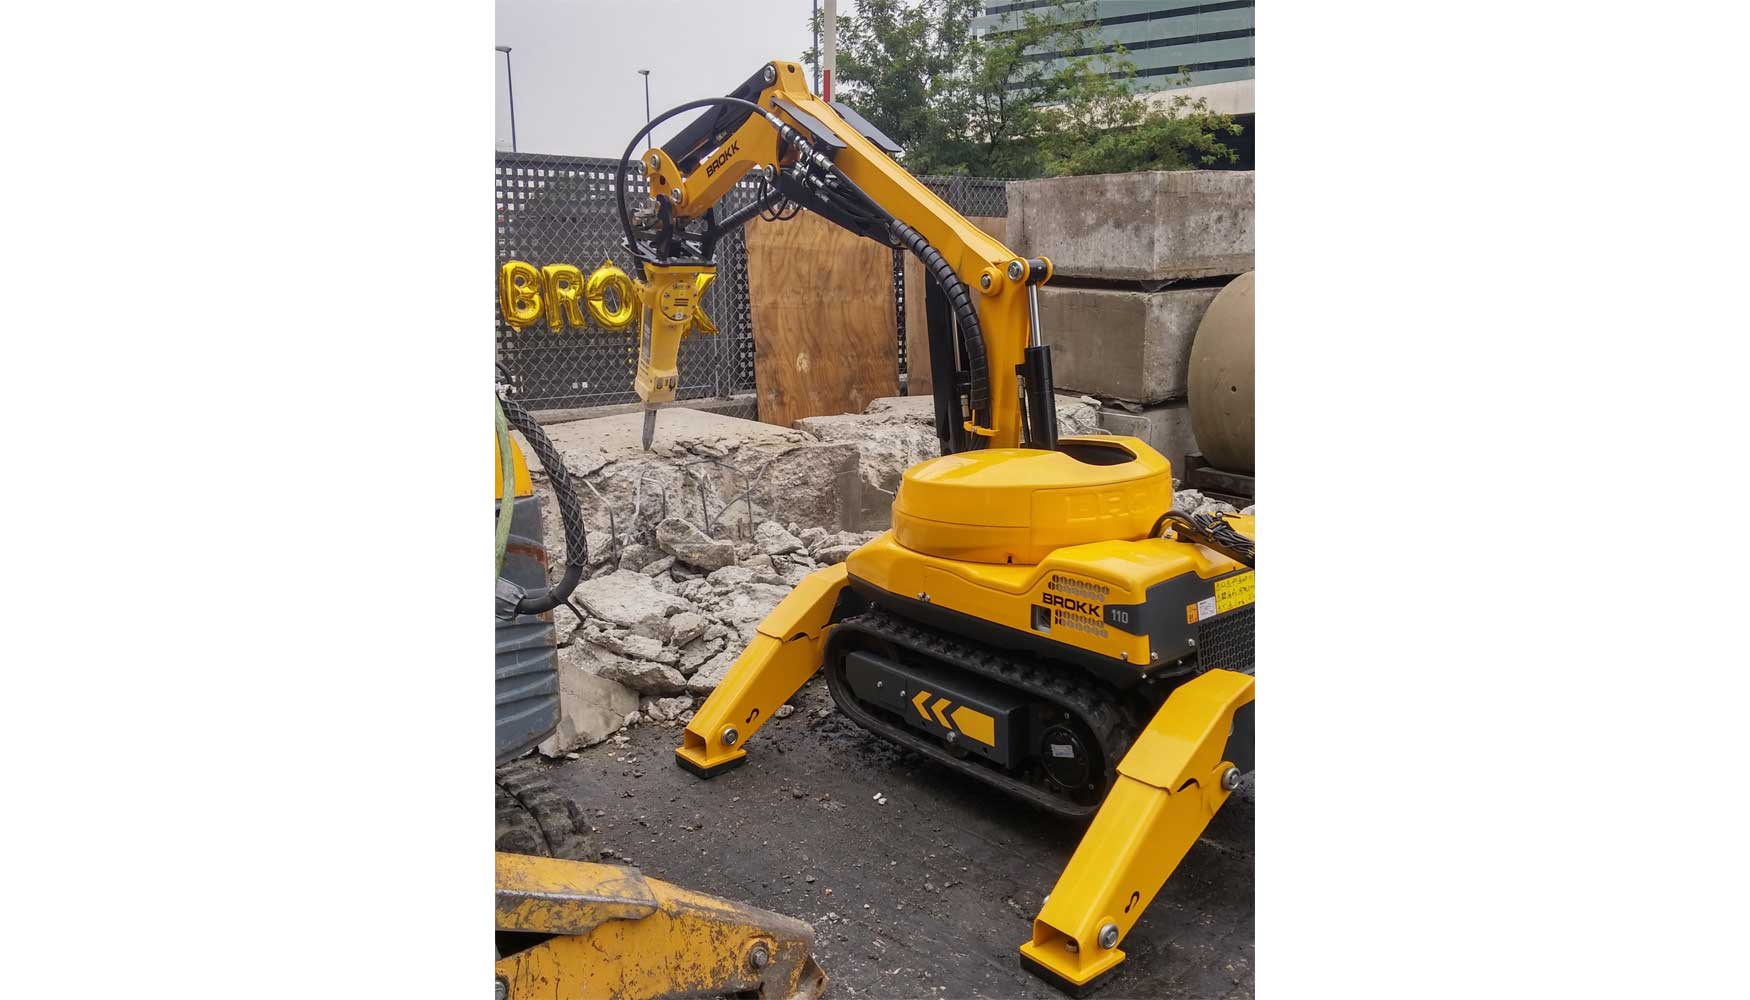 Demostracin del nuevo robot de demolicin Brokk 110 en las instalaciones de Anzeve